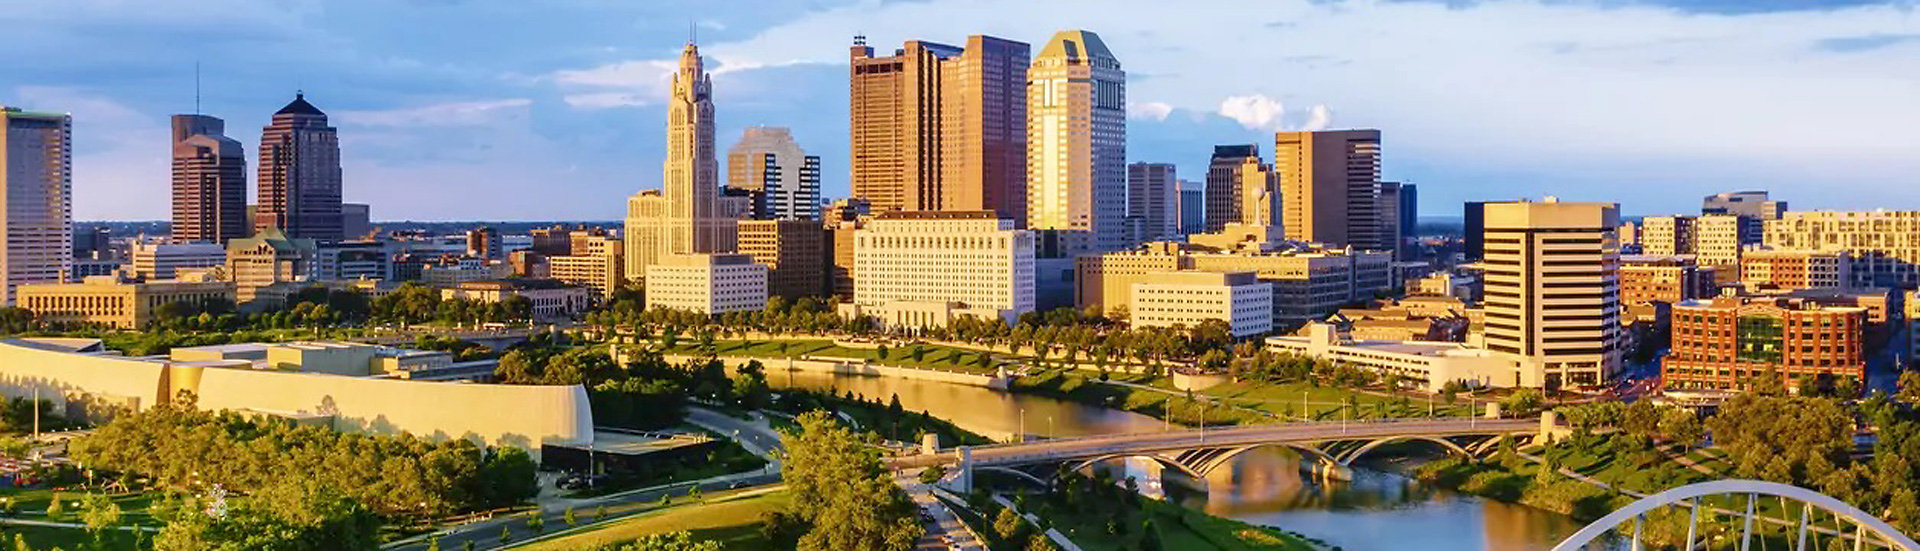 City view of Columbus, Ohio